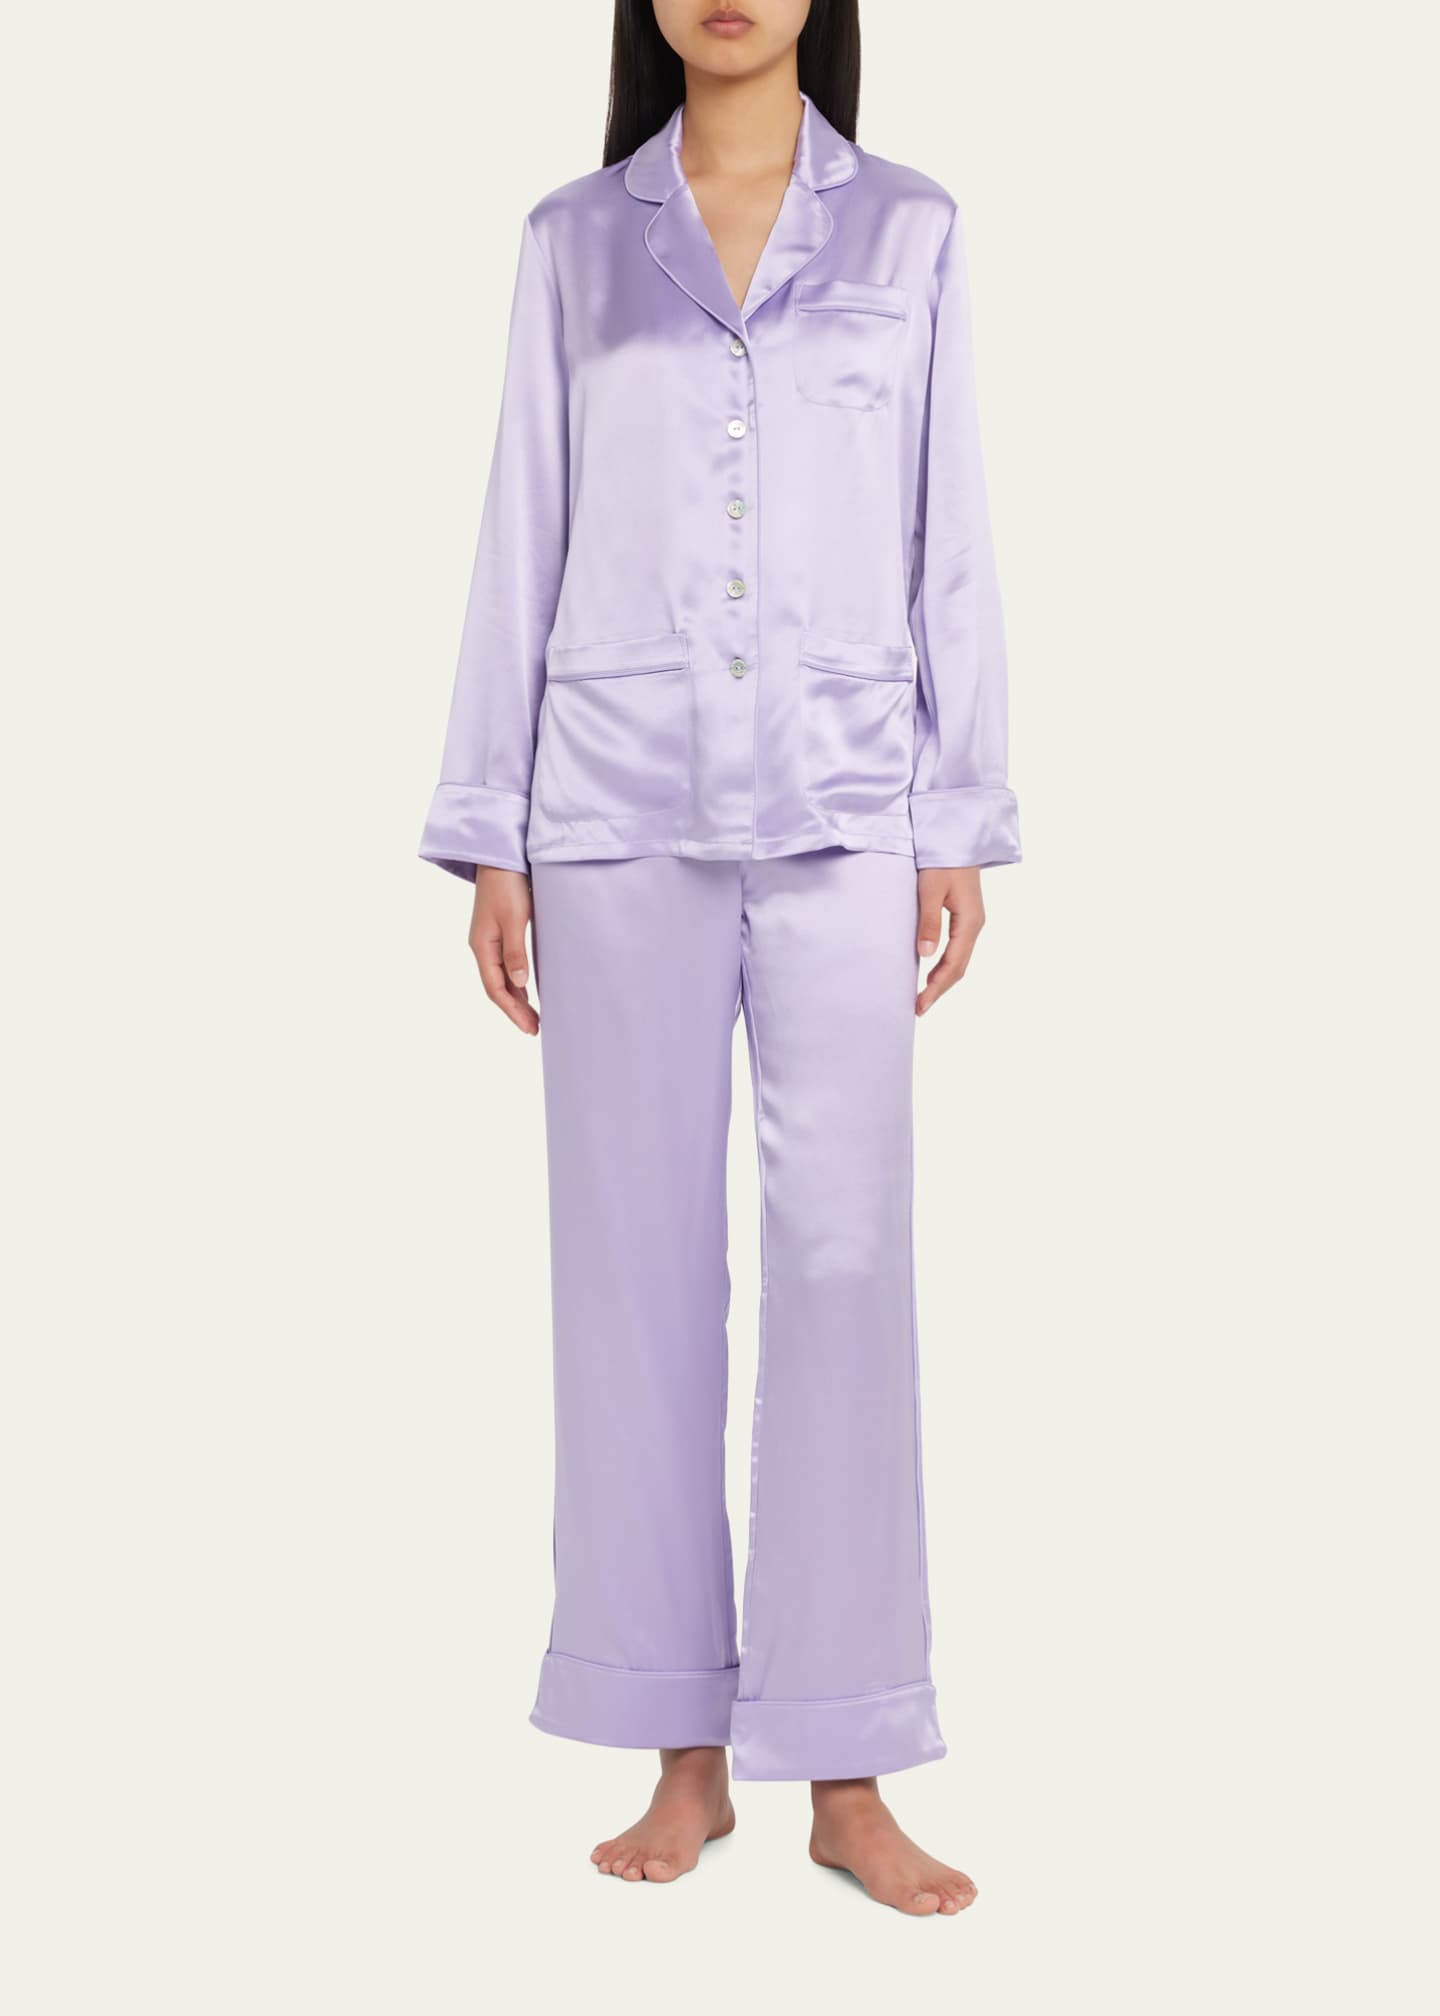 Olivia Von Halle Coco Button-Down Silk Pajama Set - Bergdorf Goodman